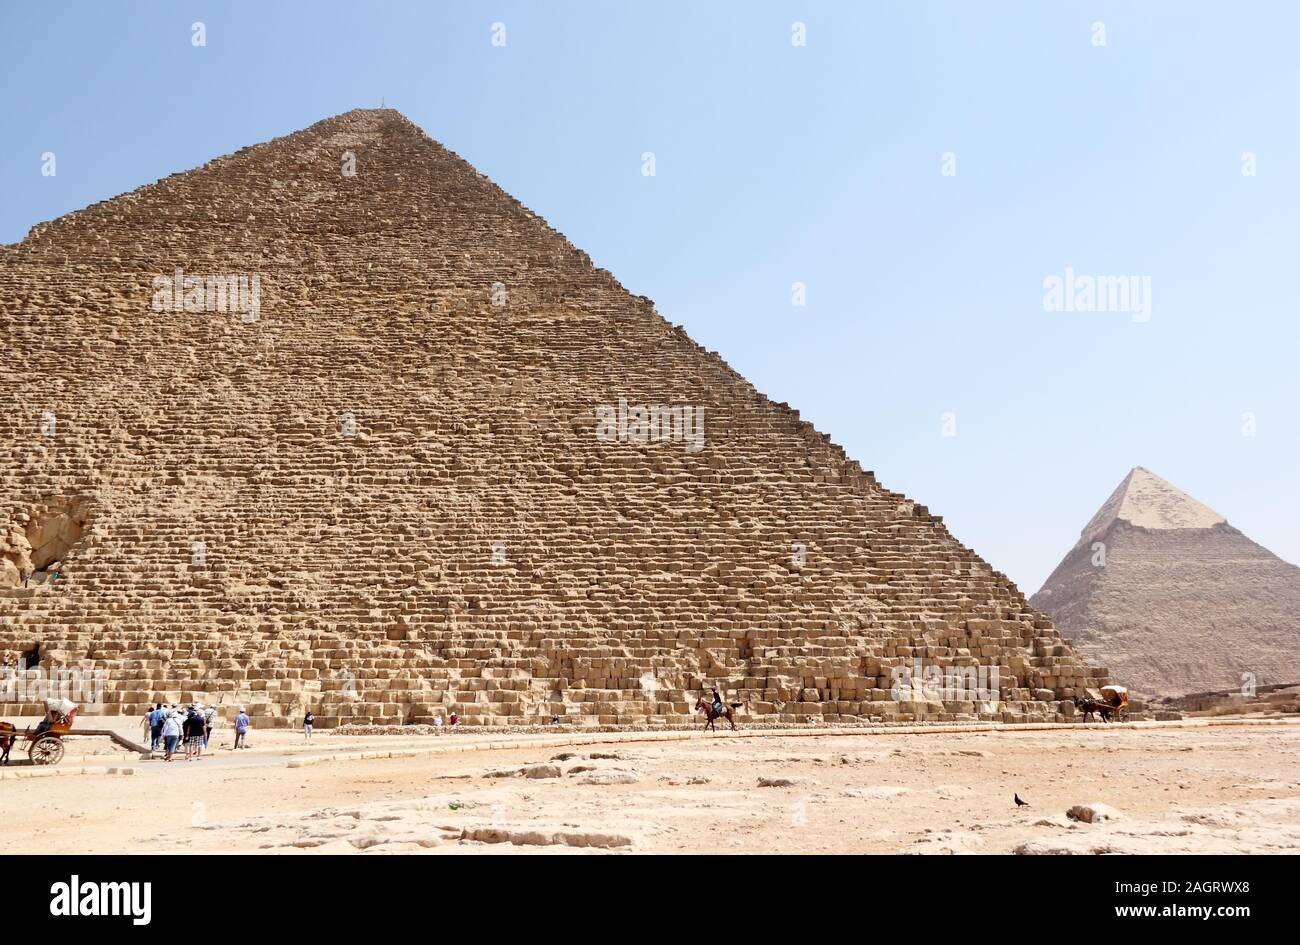 La grande pyramide de Gizeh. Le Caire, Égypte. Banque D'Images